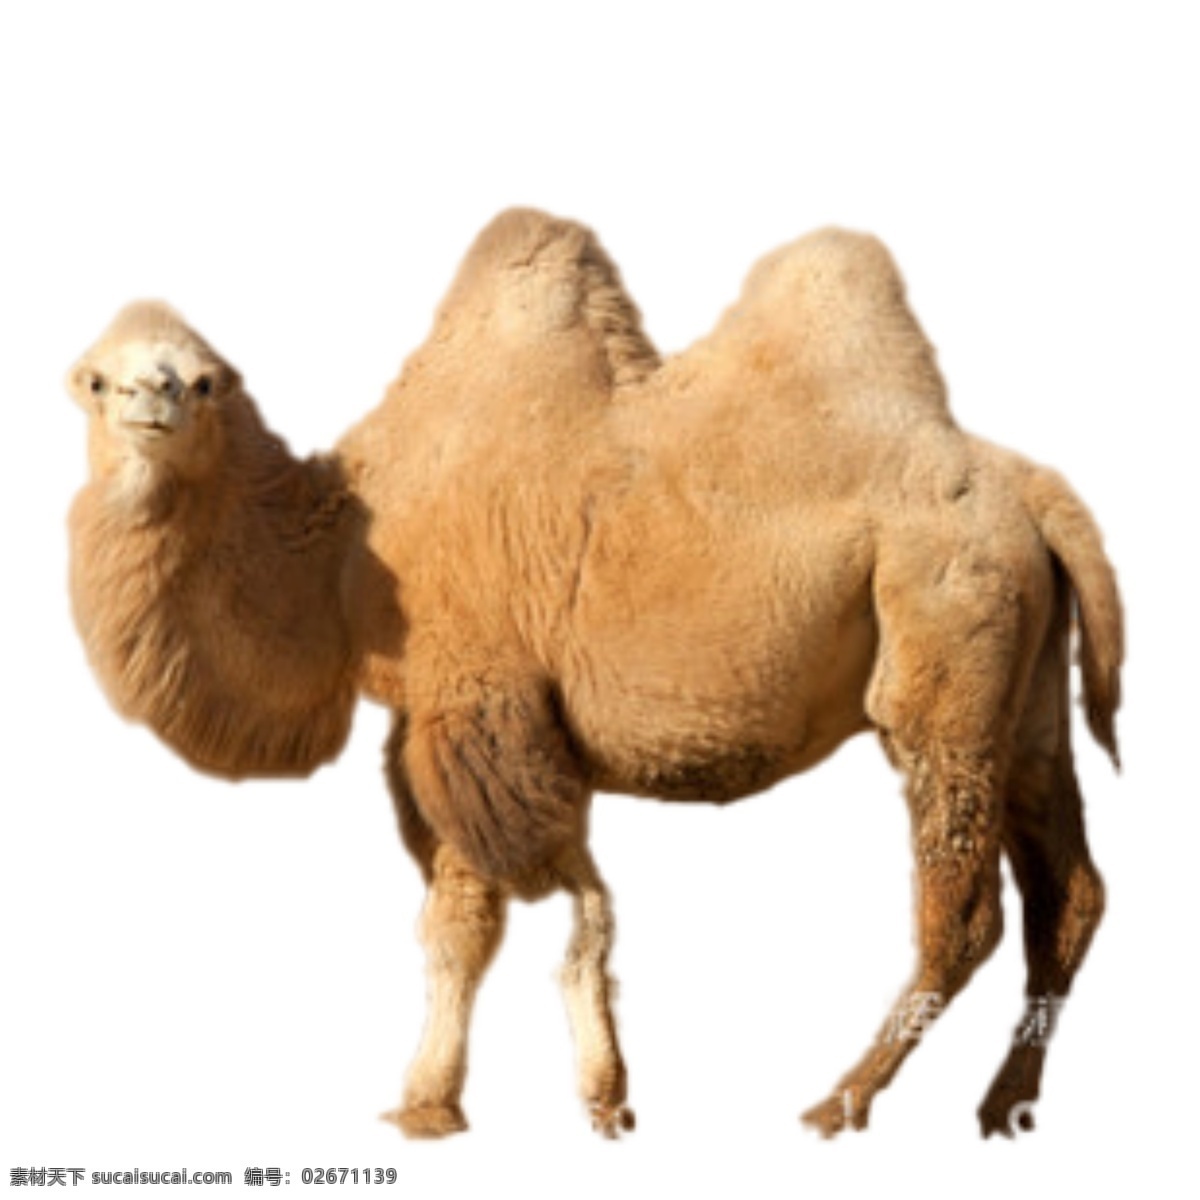 骆驼图片 骆驼 母骆驼 小骆驼 骆驼宝宝 生物世界 家禽家畜